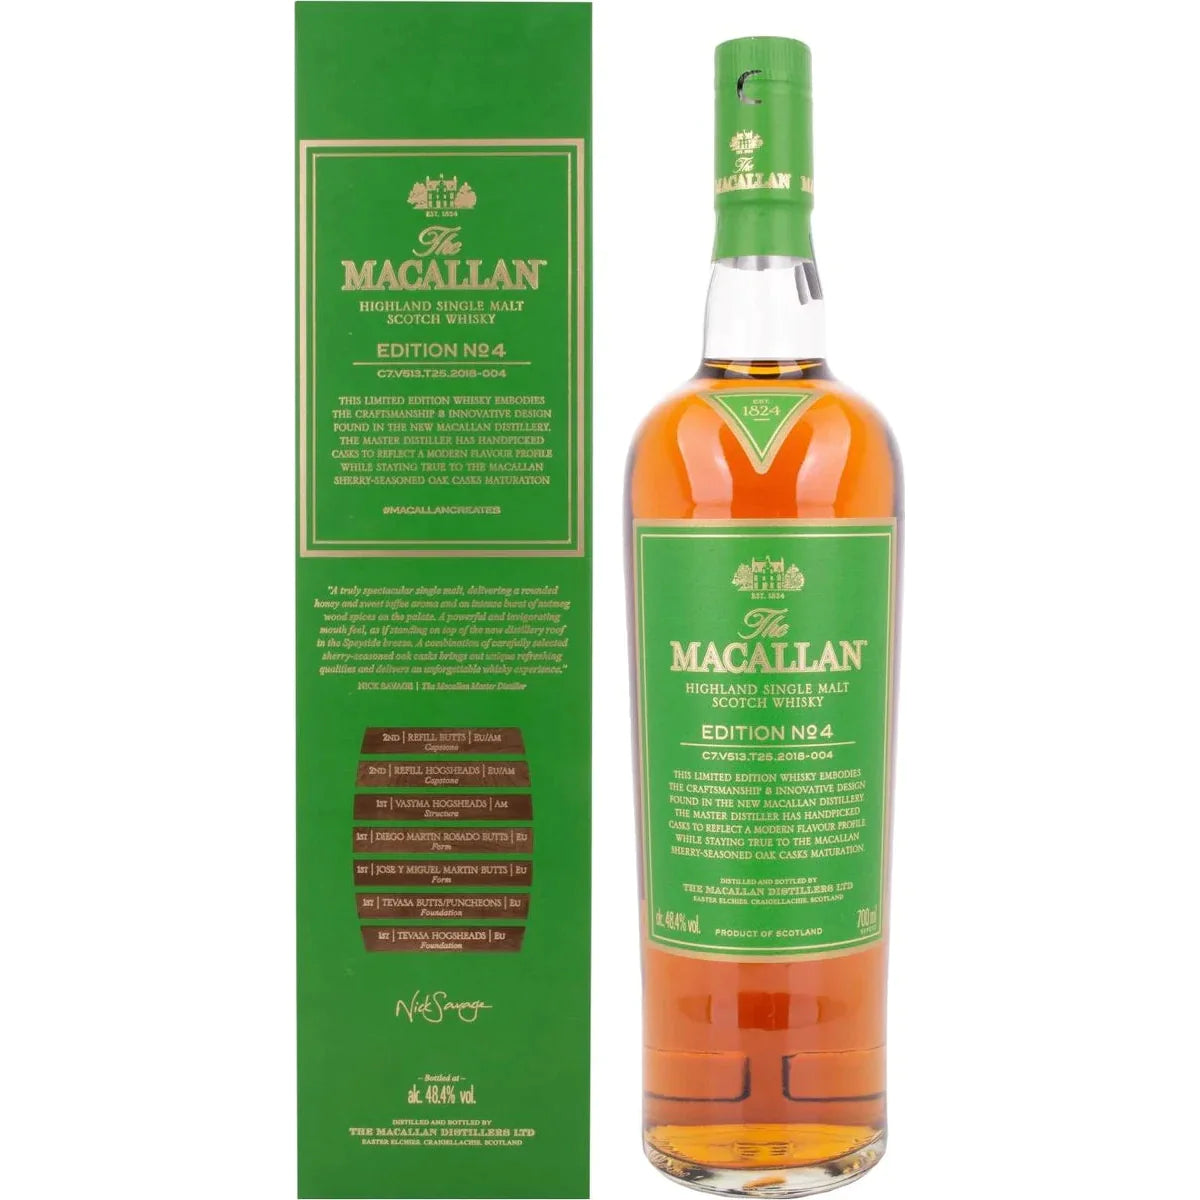 The Macallan EDITION N° 4 Highland Single Malt 48,4% Vol. 0,7l in Giftbox